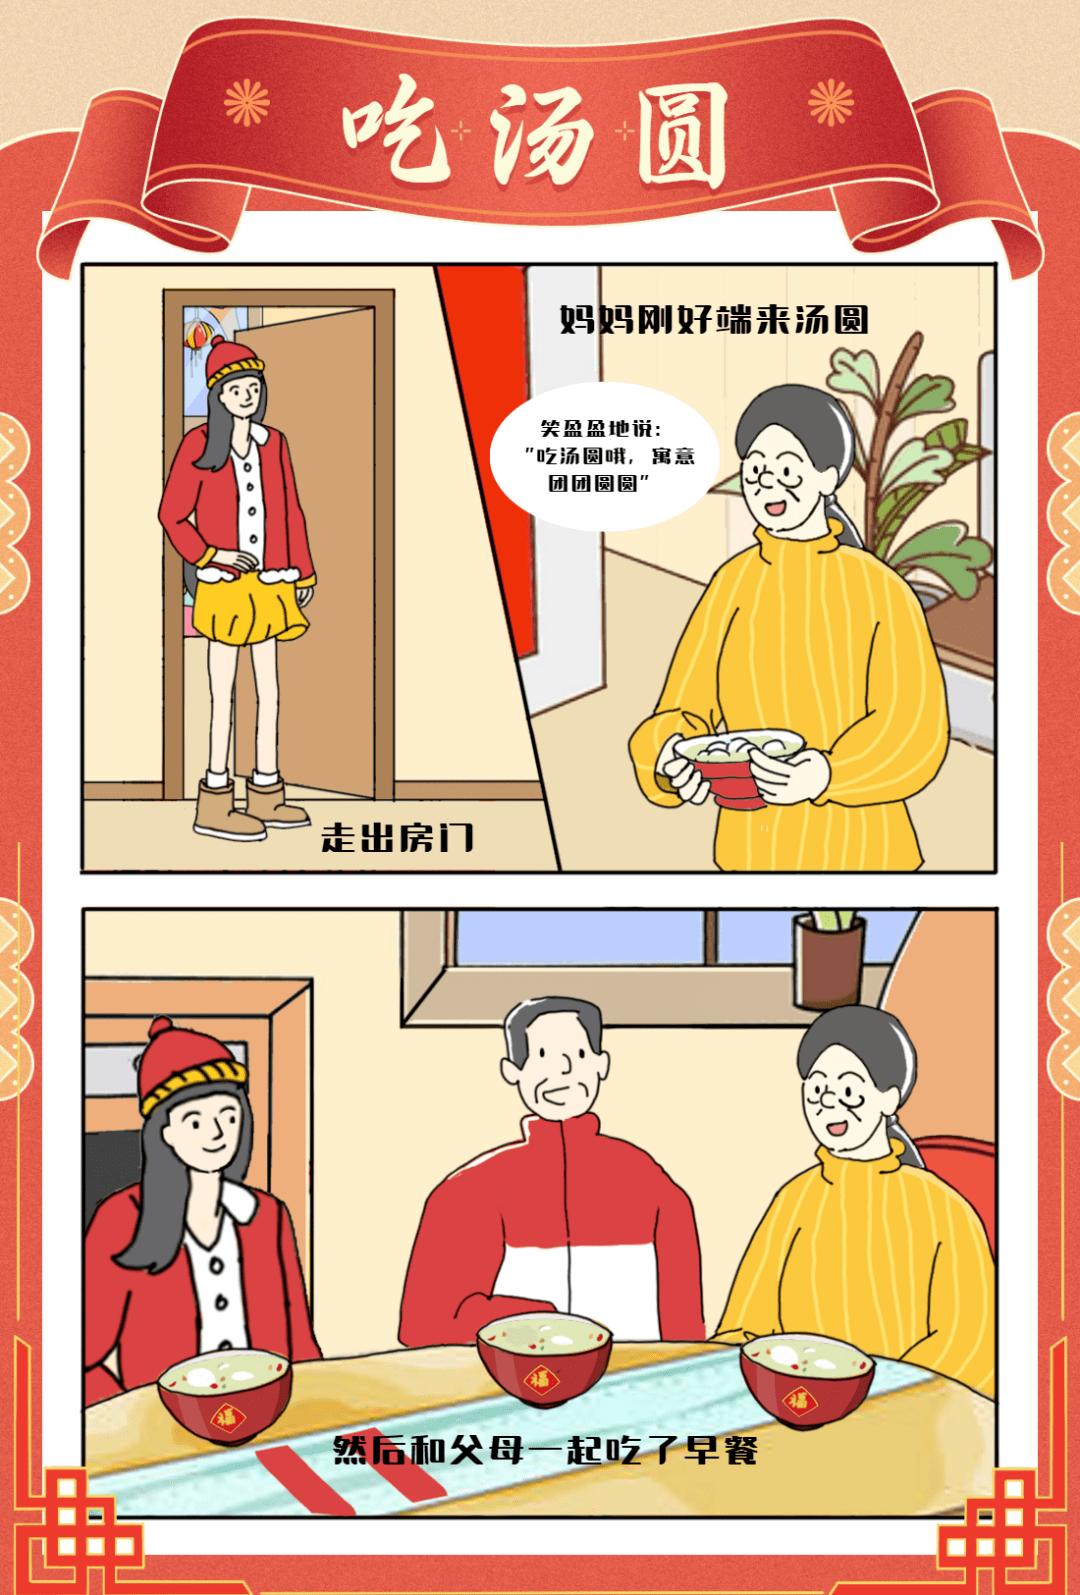 春节四格漫画简笔图片